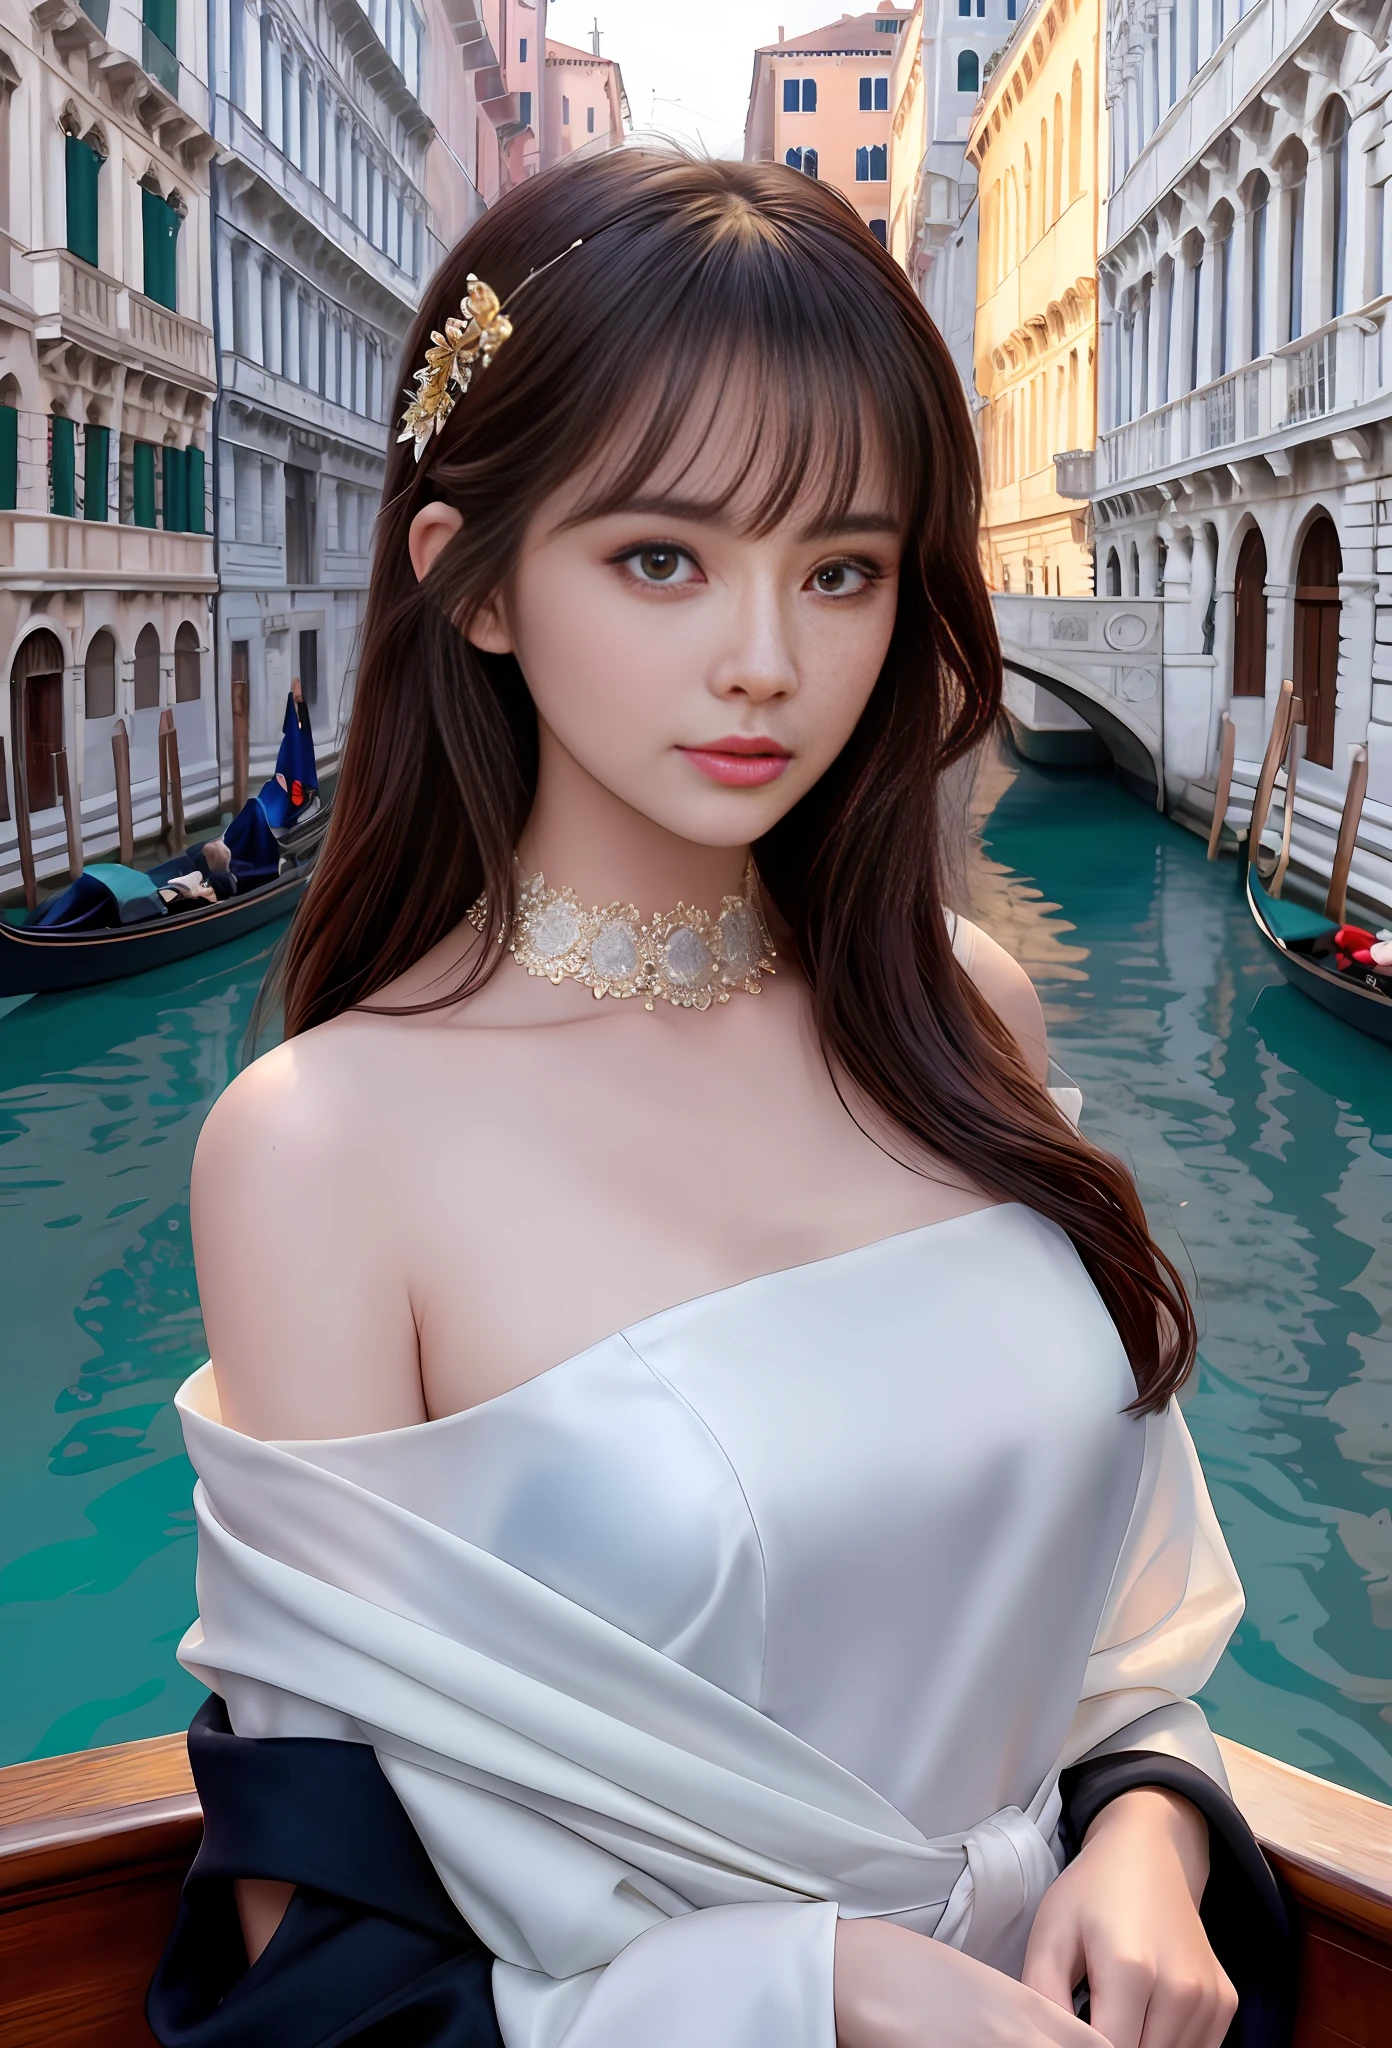 Modelshooting-Stil, (extrem detailliertes CG Unity 8k-Hintergrundbild), Ganzkörperfoto des schönsten Kunstwerks der Welt, atemberaubend schöne fotorealistische süße Frauen, ein hyperrealistisches, ultradetailliertes Foto eines schönen Mädchens als Tänzerin der 2020er Jahre auf dem Boot im Venedig der 2020er Jahre,(Seufzerbrücke Hintergrund),(Prinzessinnenaugen,glänzende Pupillen), detaillierte symmetrische schöne haselnussbraune Augen, detailliertes wunderschönes Gesicht,sehr detailliert, beschwingt,professionelles majestätisches Ölgemälde von Ed Blinkey, Atey Ghailan, Studio Ghibli, von Jeremy Mann, Greg Manchess, Antonio Moro, Trends auf Artstation, Trends bei CGSociety, kompliziert, hohe Detailgenauigkeit, scharfer Fokus, dramatisch, fotorealistische Malereikunst von Midjourney und Greg Rutkowski